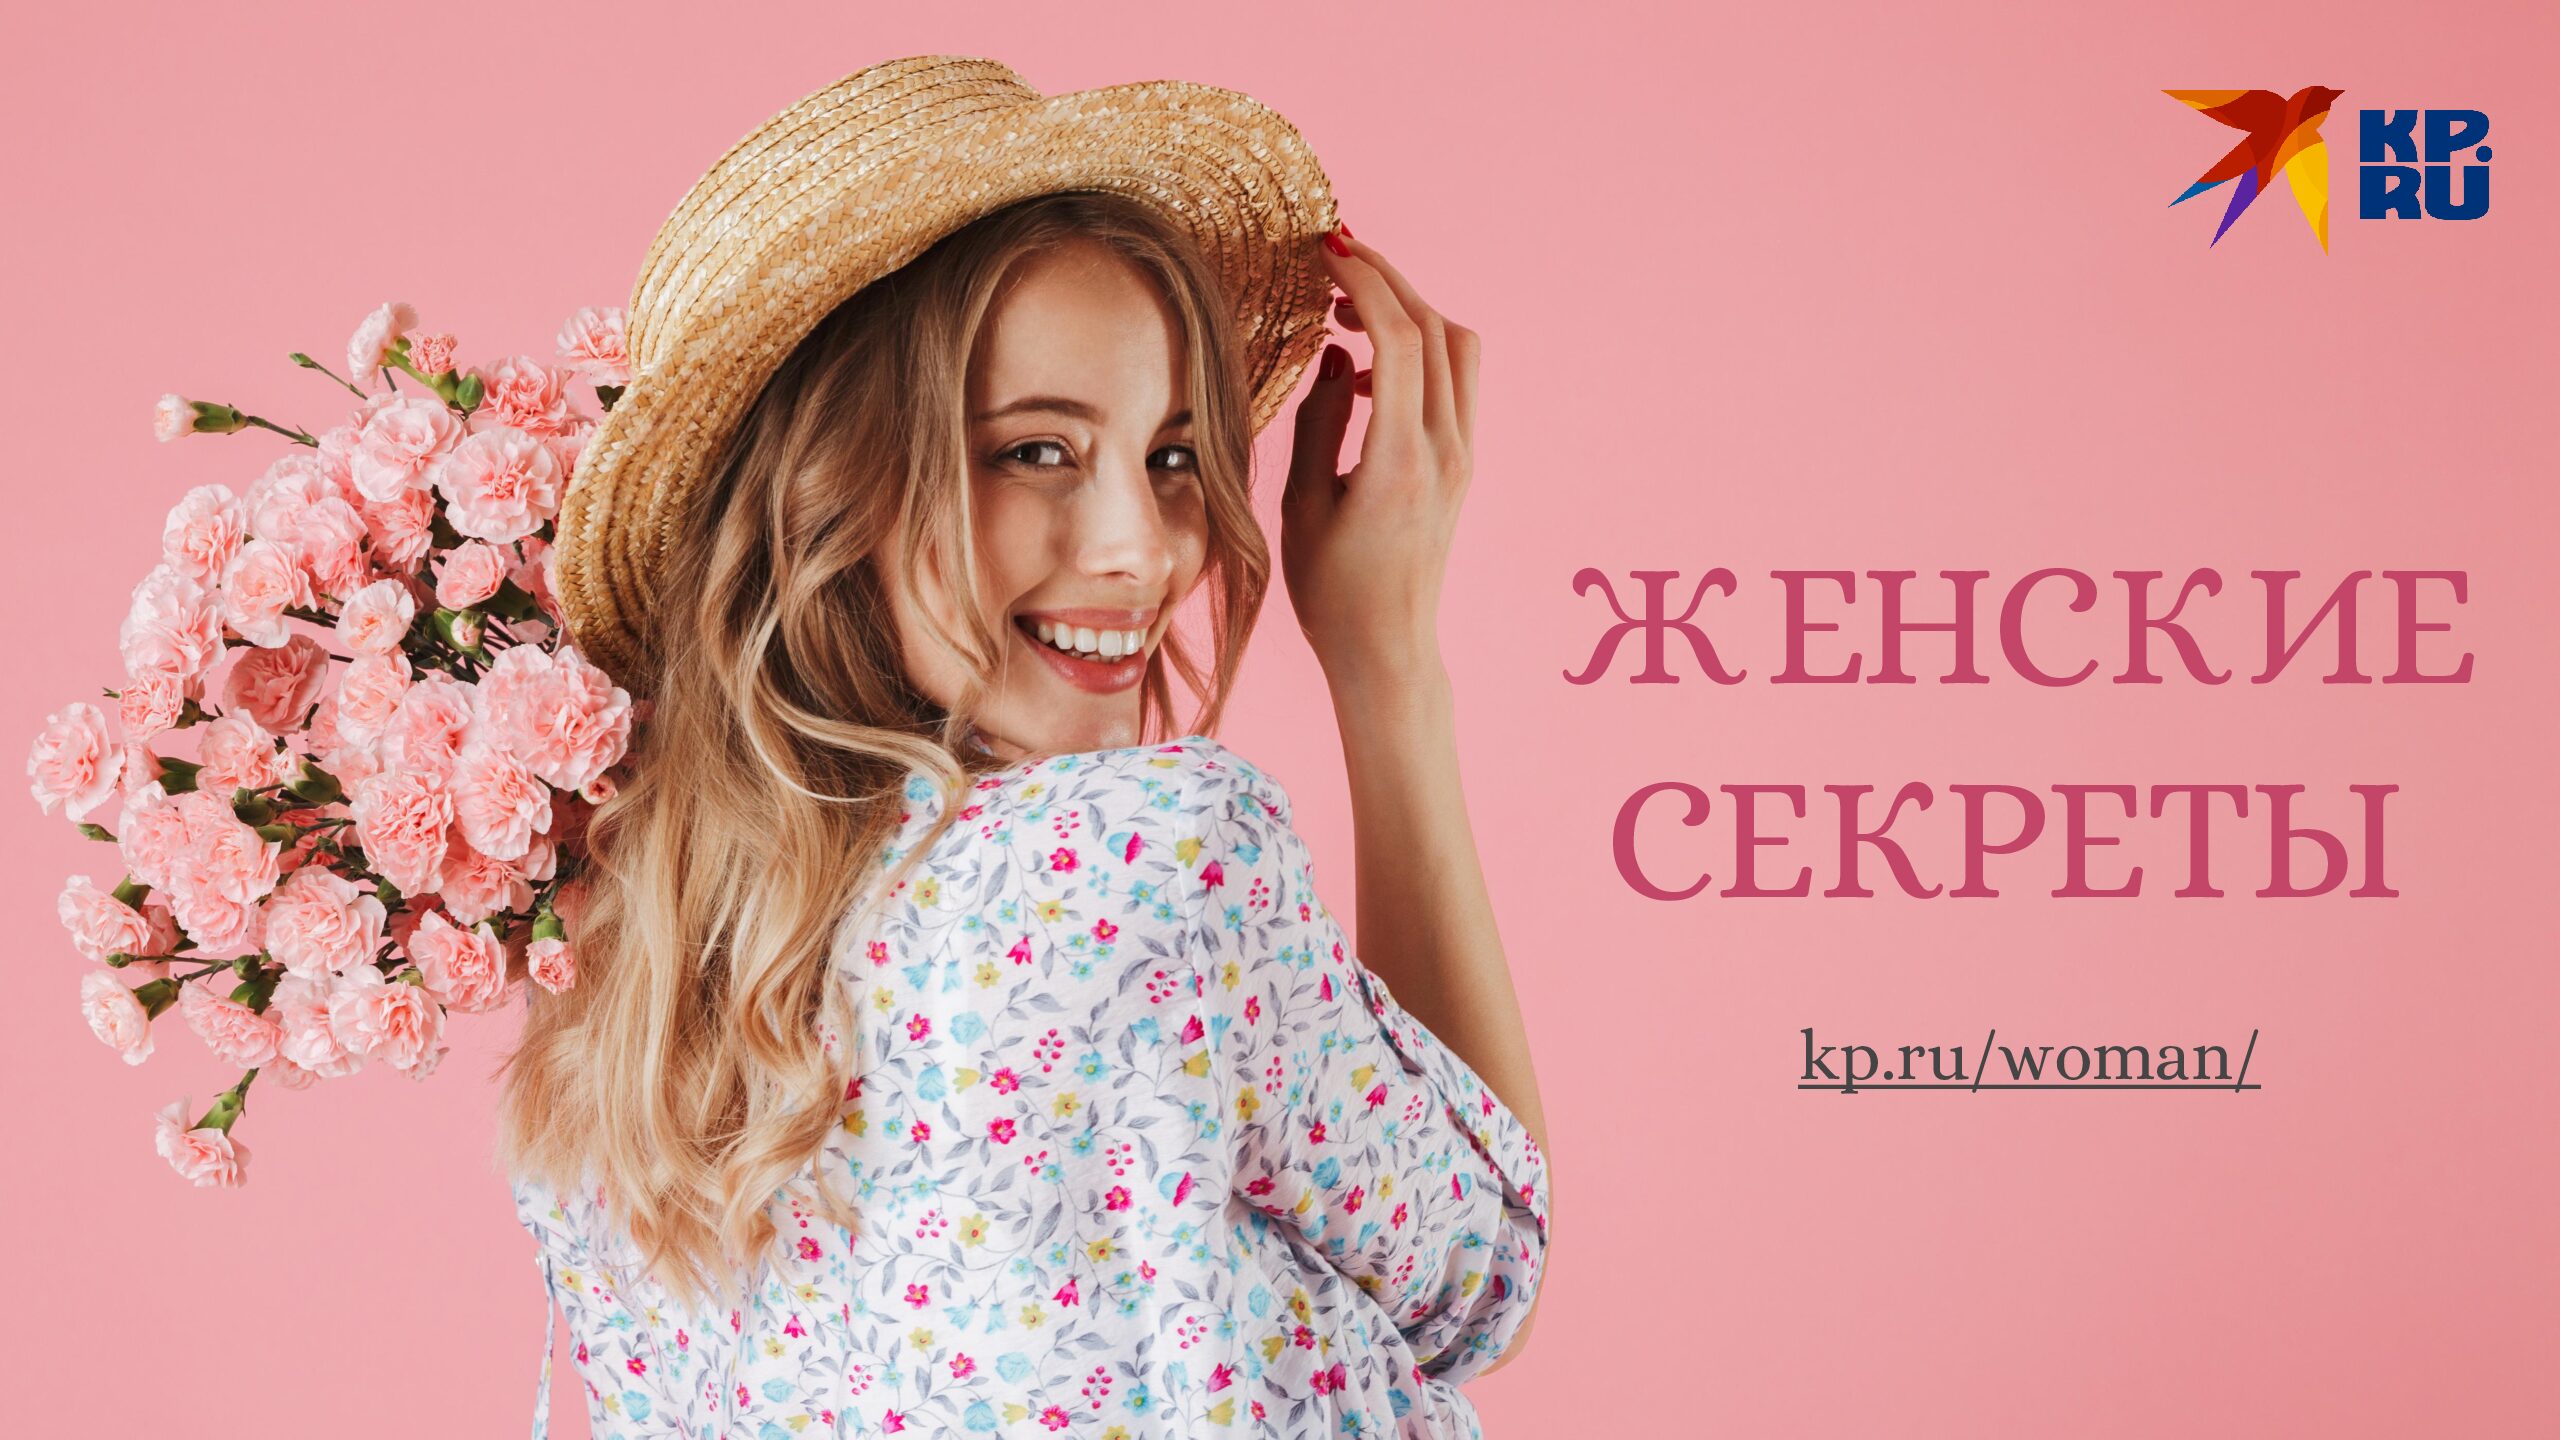 Раздел «Женские секреты» на kp.ru